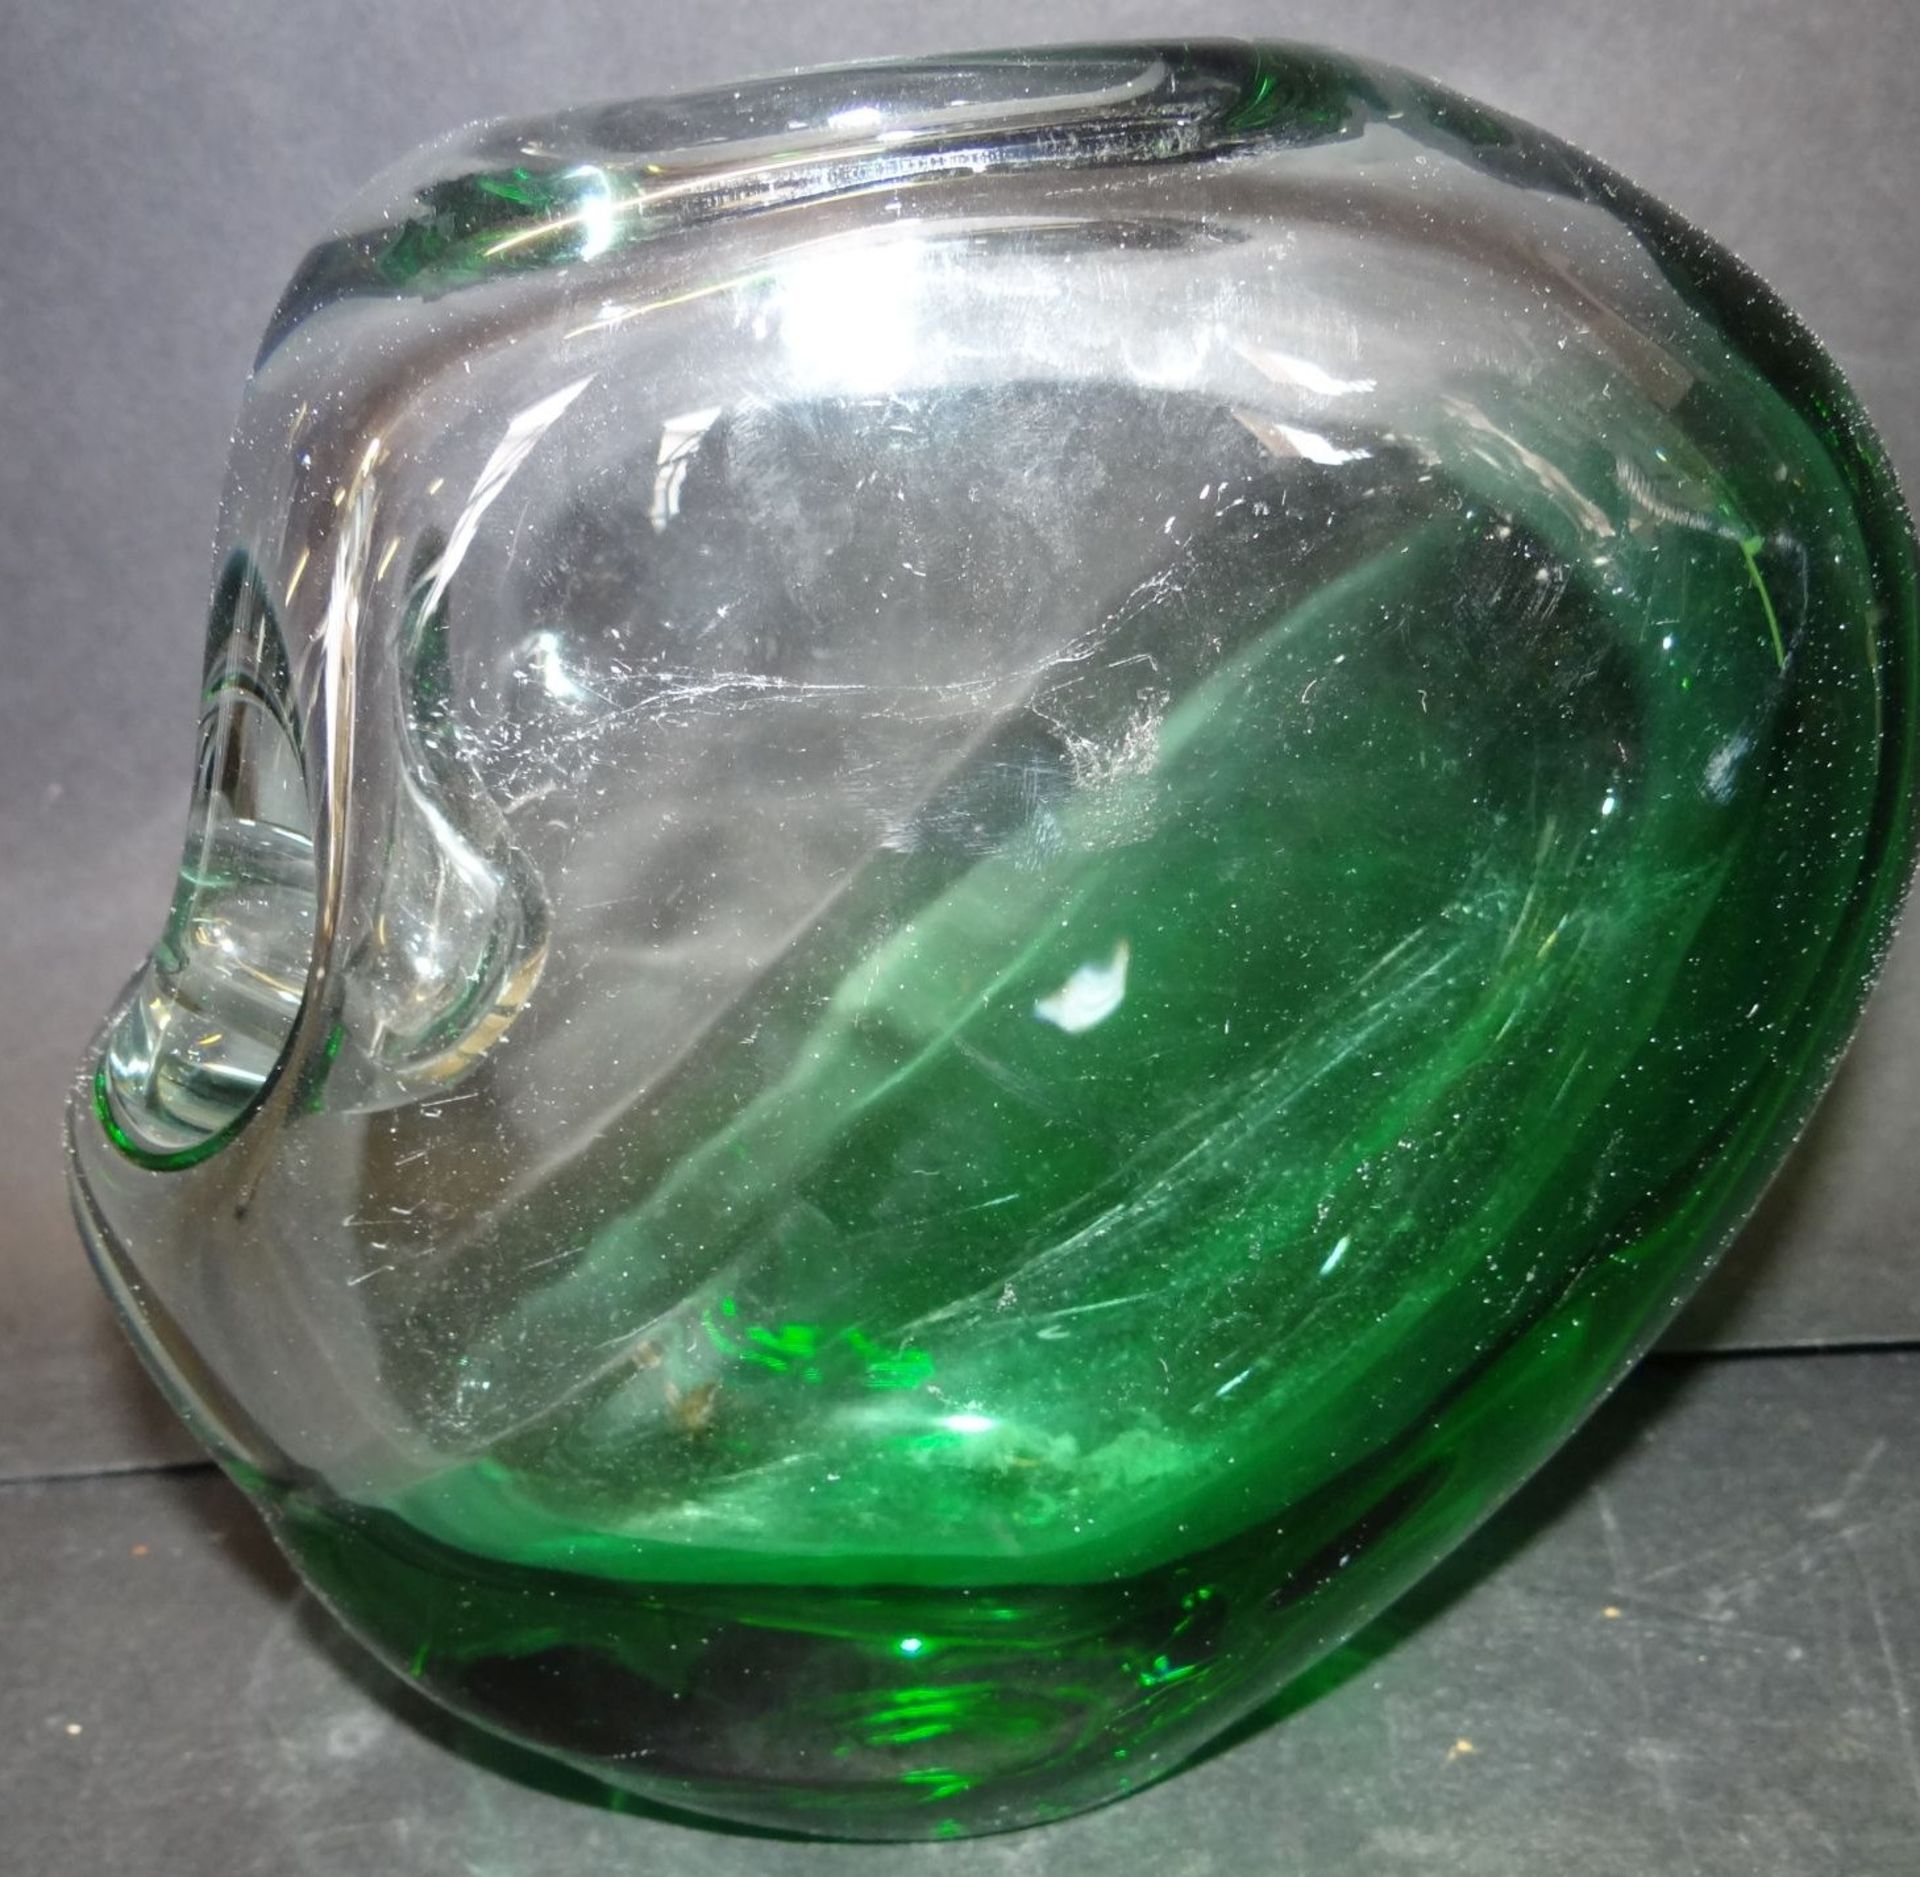 grosse, schwere Kunstglas-Vase, grün/weiss, 17x17 c